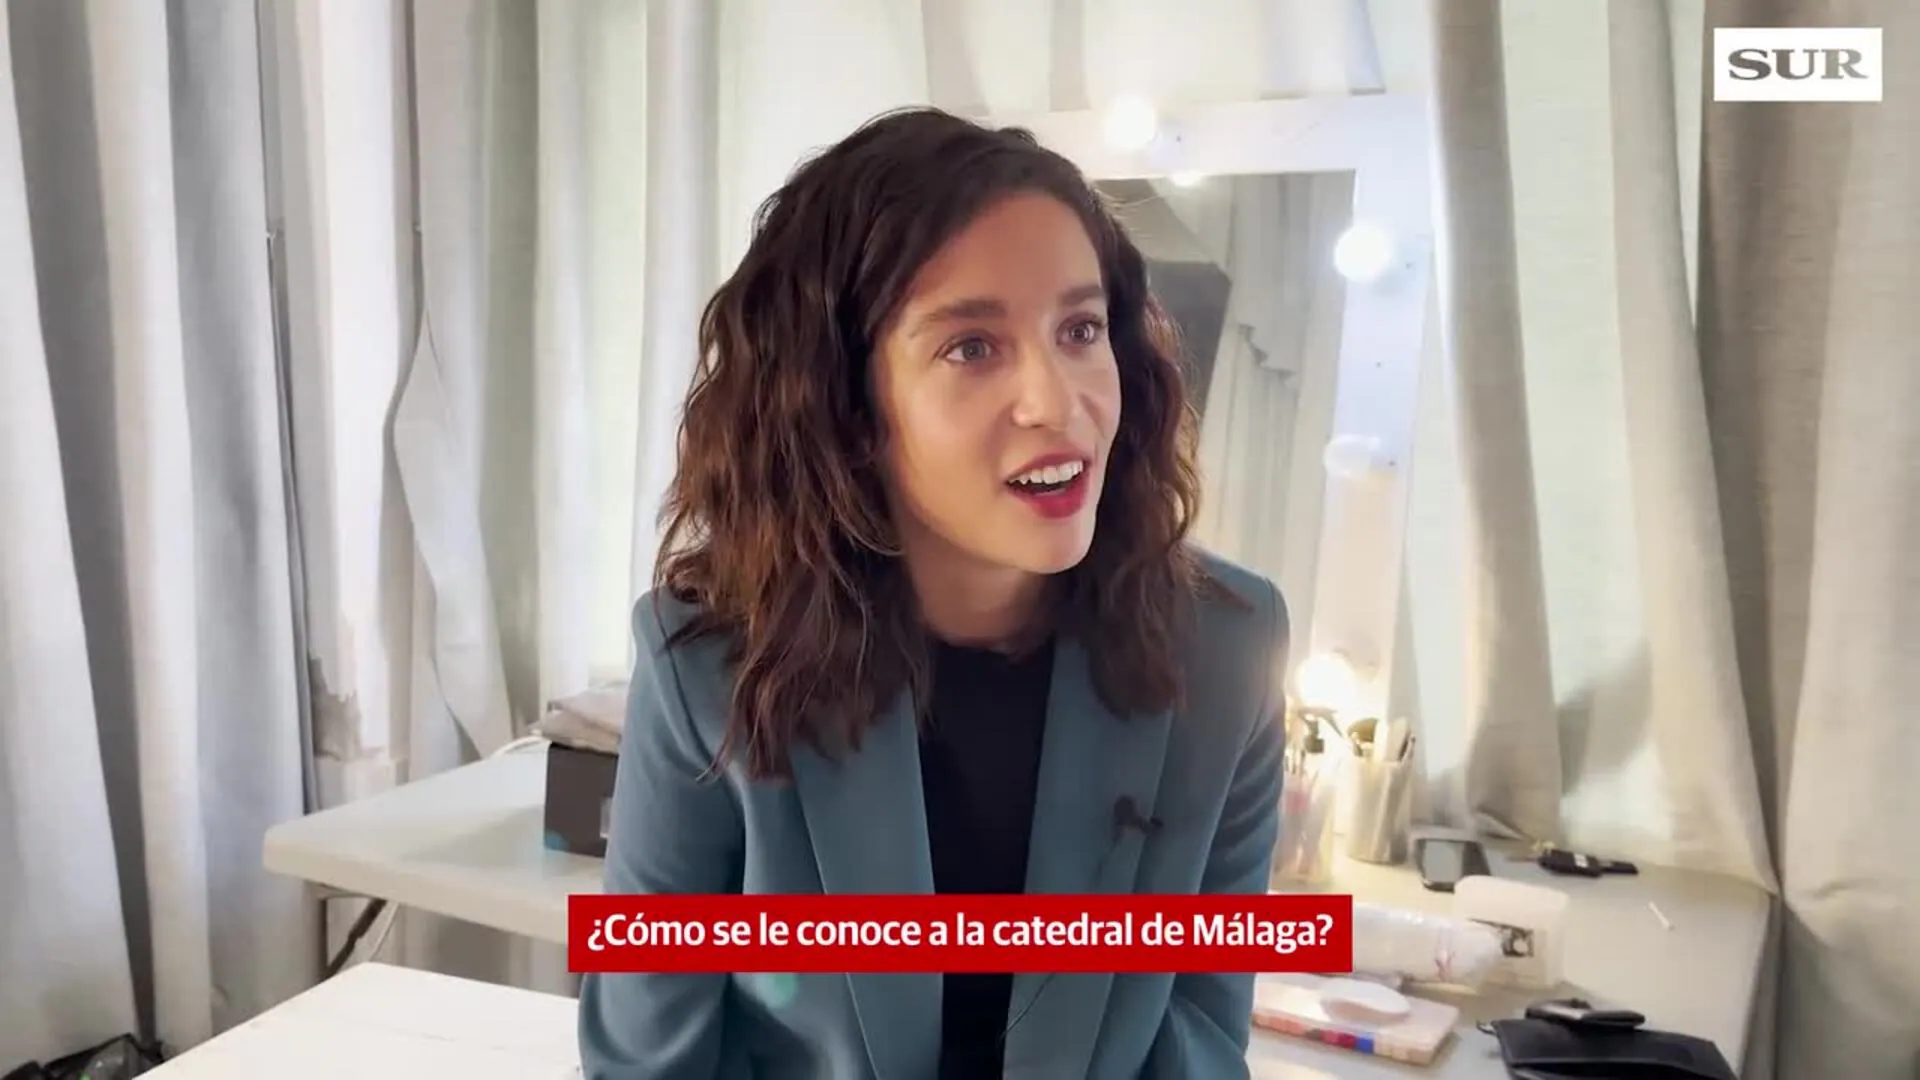 La actriz María Pedraza se somete al test ‘malaguita’ de SUR